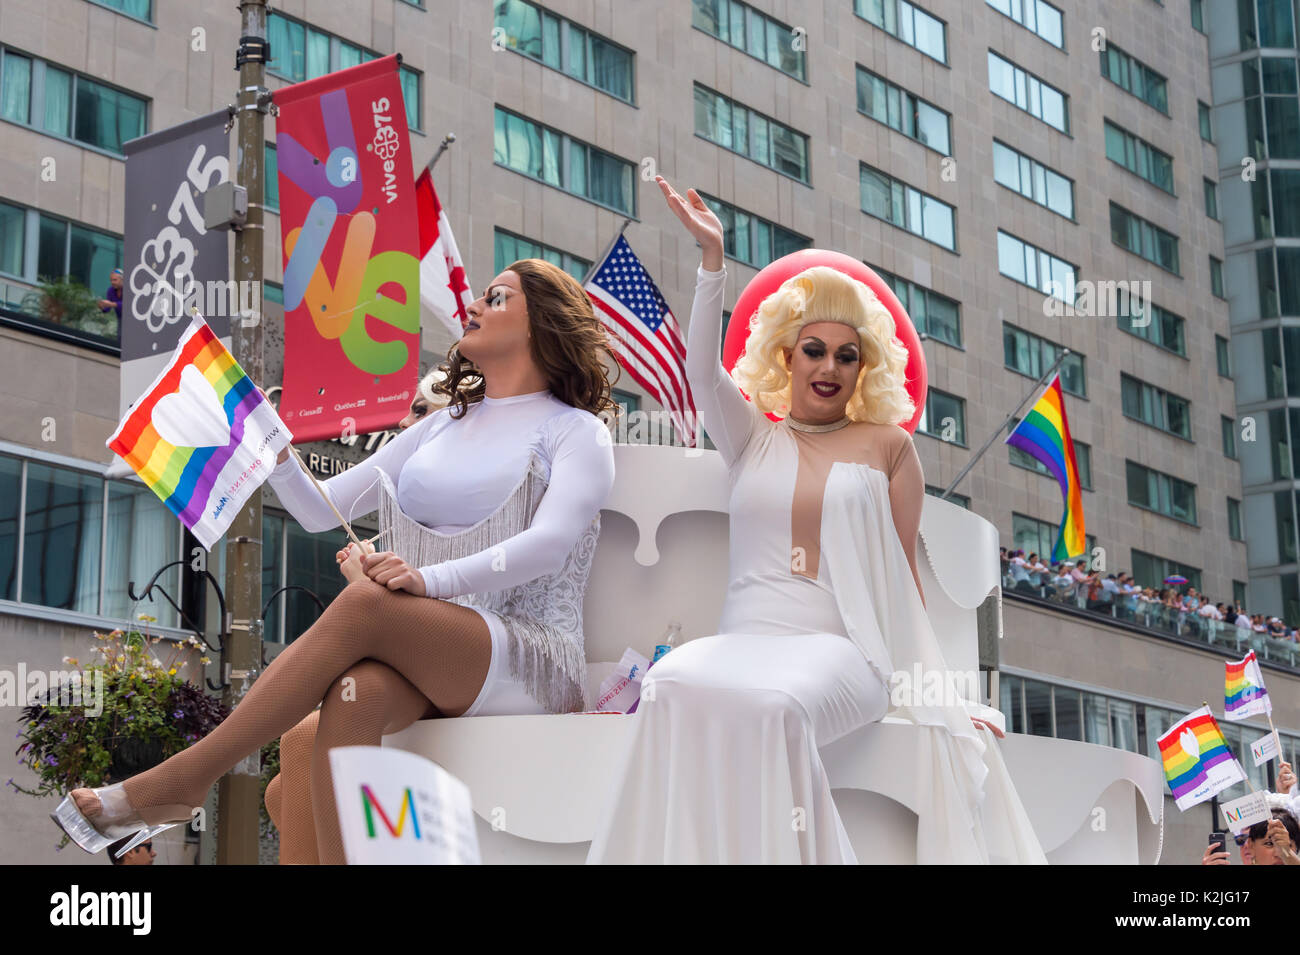 Montréal, le 20 août 2017 : Drag Queens de prendre part à la parade de la Fierté gaie de Montréal Banque D'Images